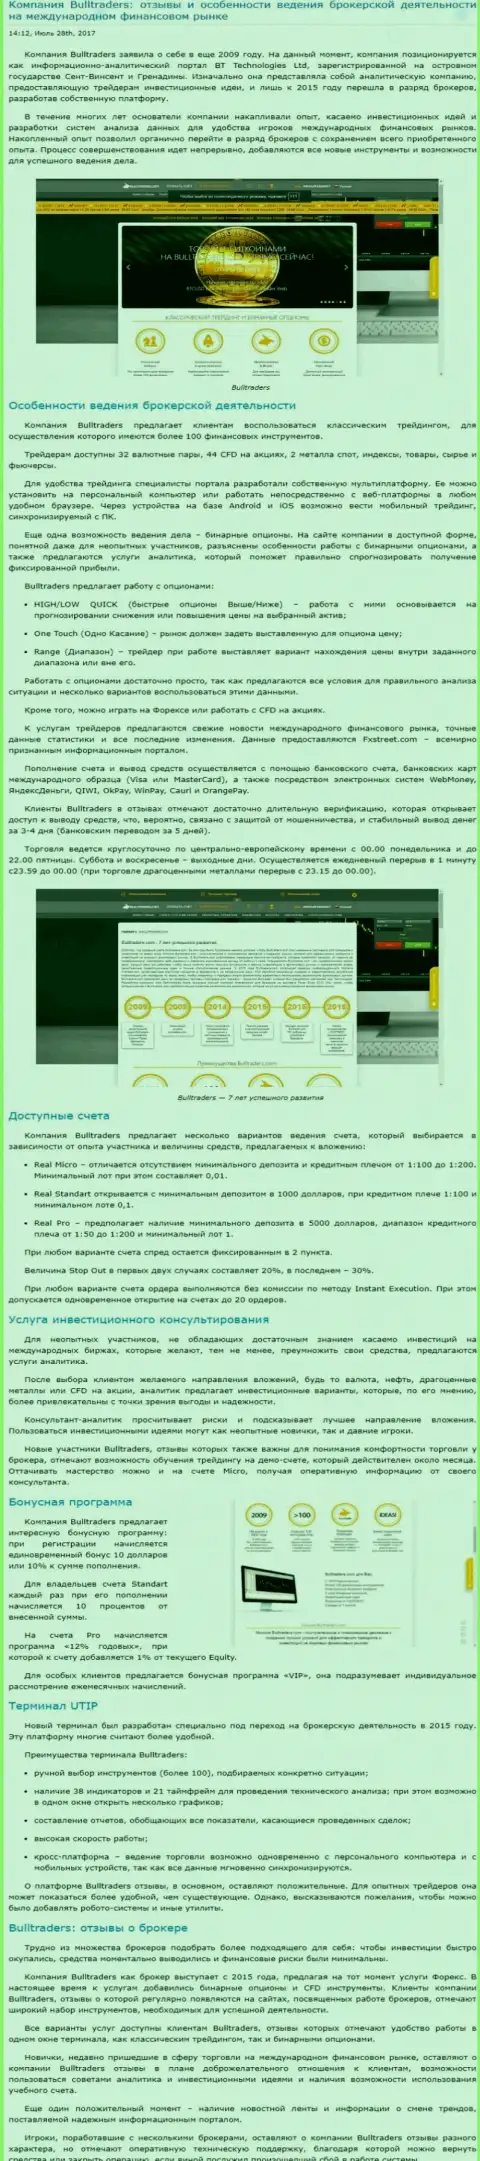 Анализ деятельности forex брокера BullTraders на рынке Форекс на web-сервисе Besuccess Ru